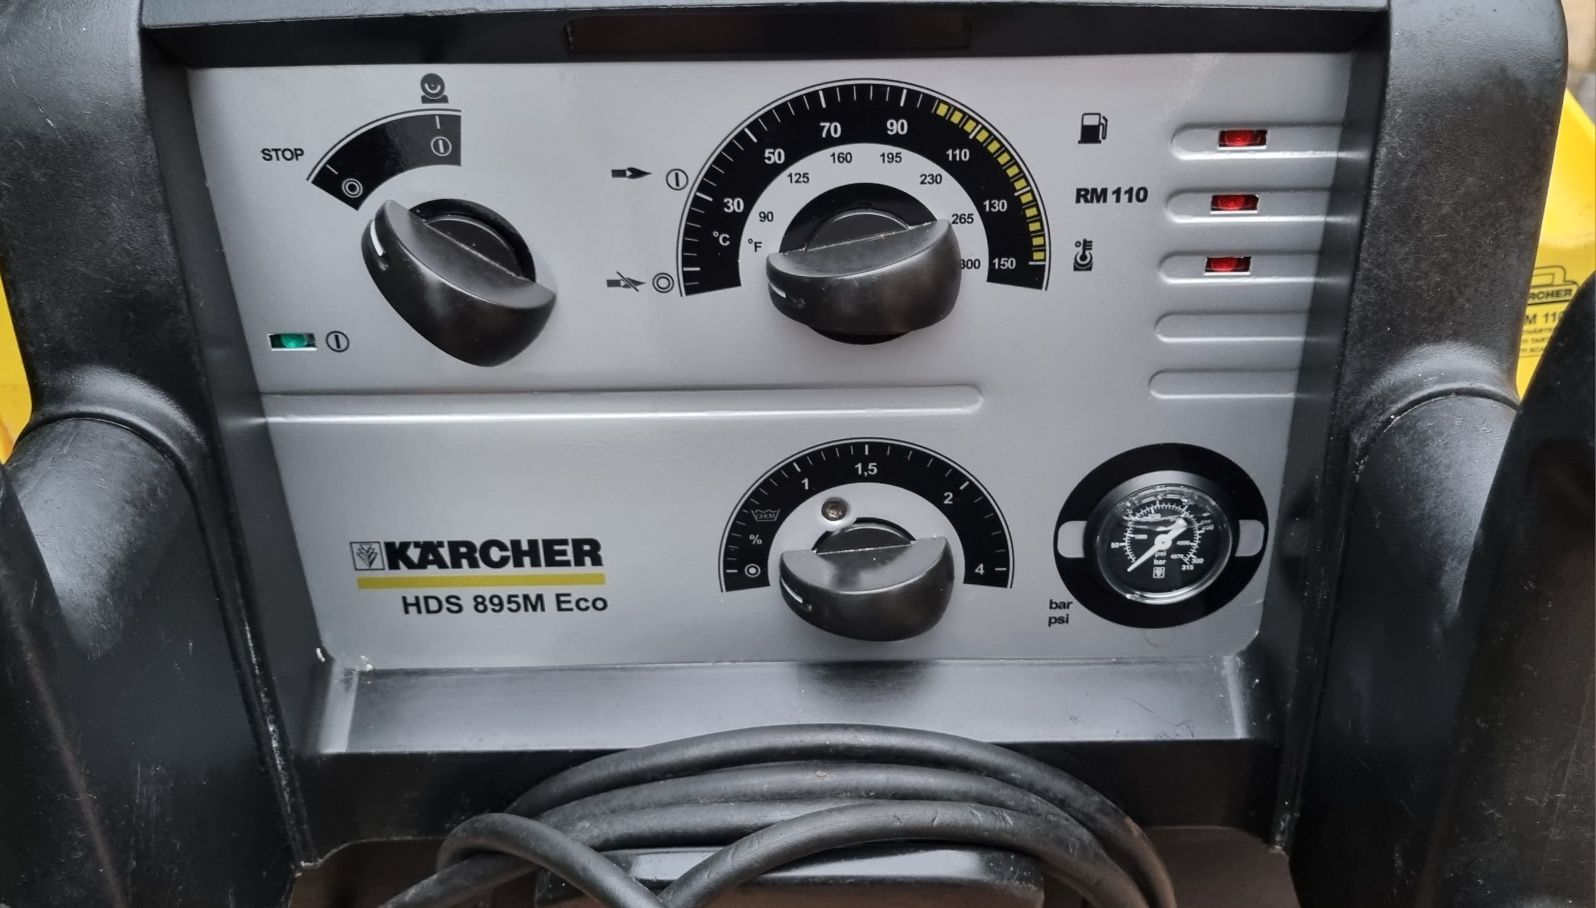 Myjka ciśnieniowa Karcher HDS 895m Eco. Super stan duży serwis. 180Bar